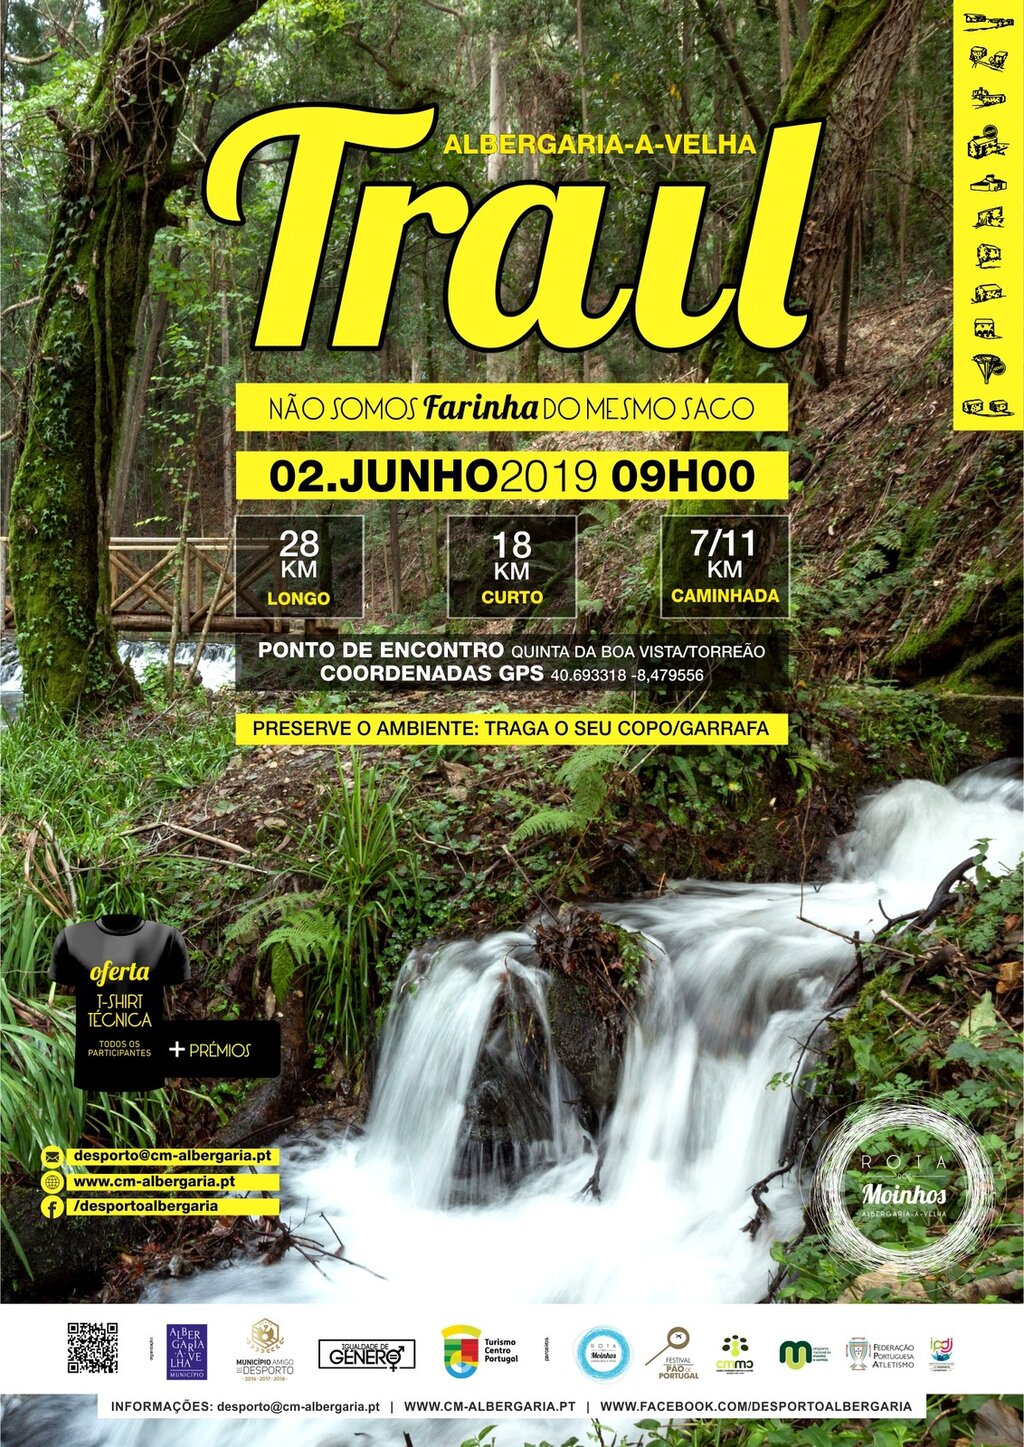 Município de Albergaria-a-Velha organiza nova edição do Trail Rota dos Moinhos